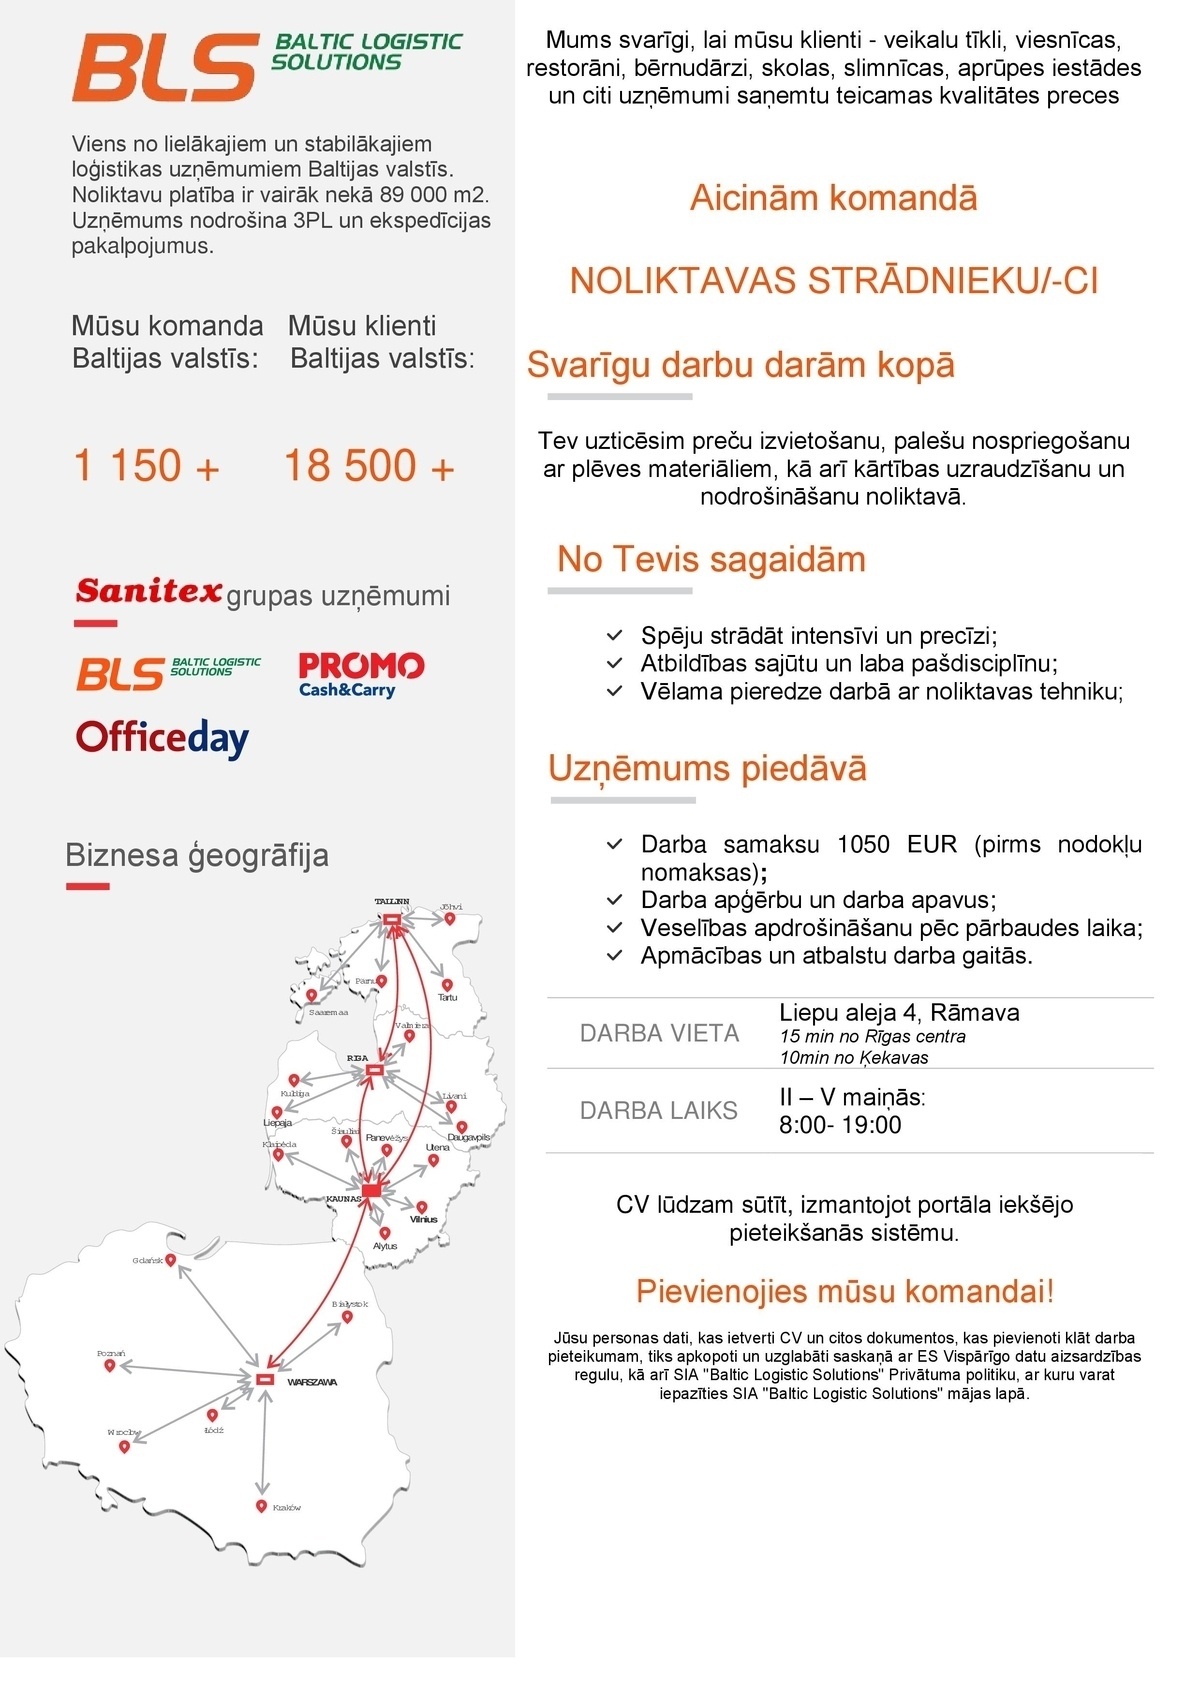 Baltic Logistic Solutions, SIA Noliktavas strādnieks/-ce